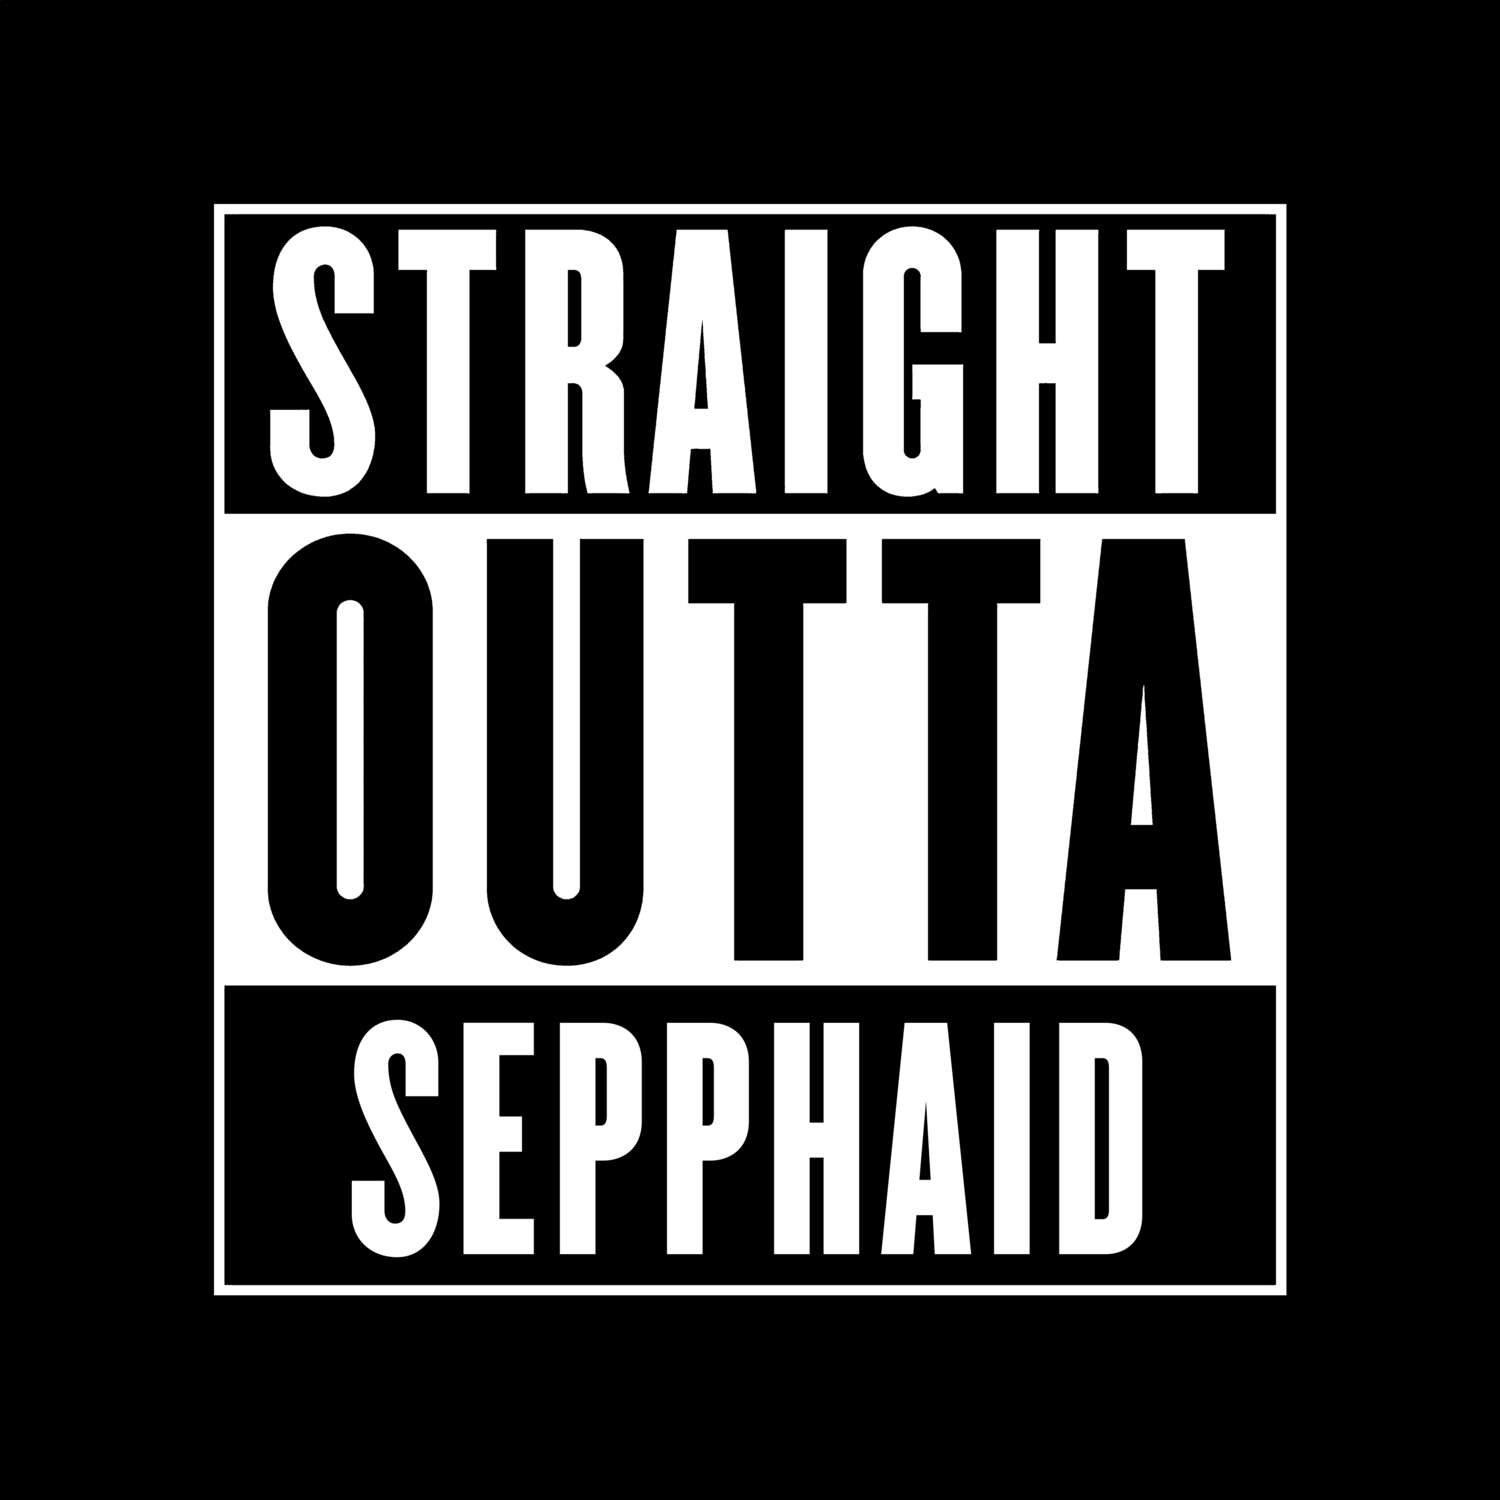 Sepphaid T-Shirt »Straight Outta«